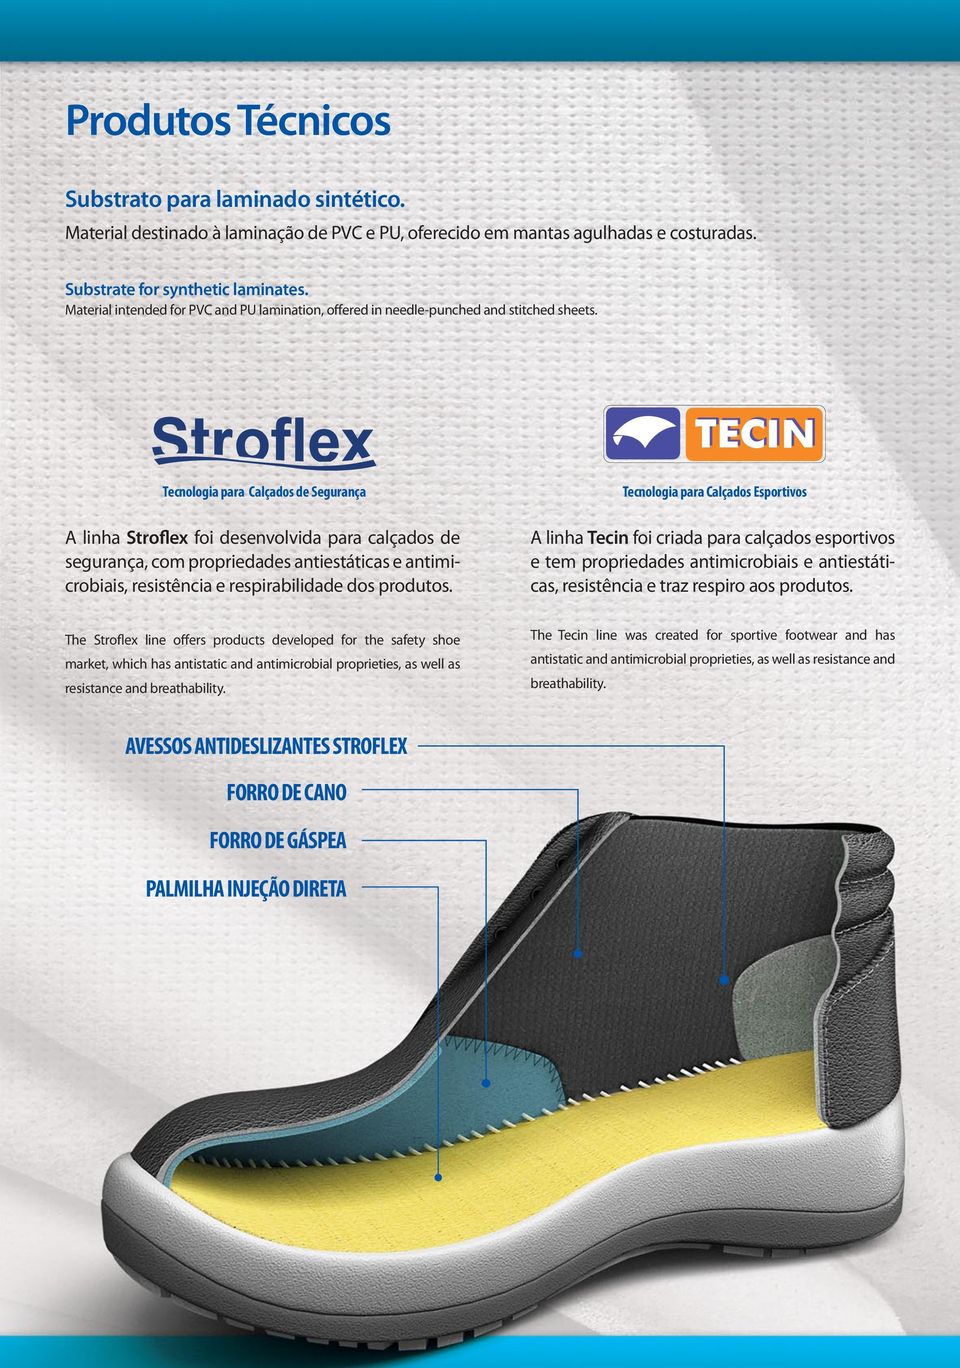 Tecnologia para Calçados de Segurança A linha Stroflex foi desenvolvida para calçados de segurança, com propriedades antiestáticas e antimicrobiais, resistência e respirabilidade dos produtos.